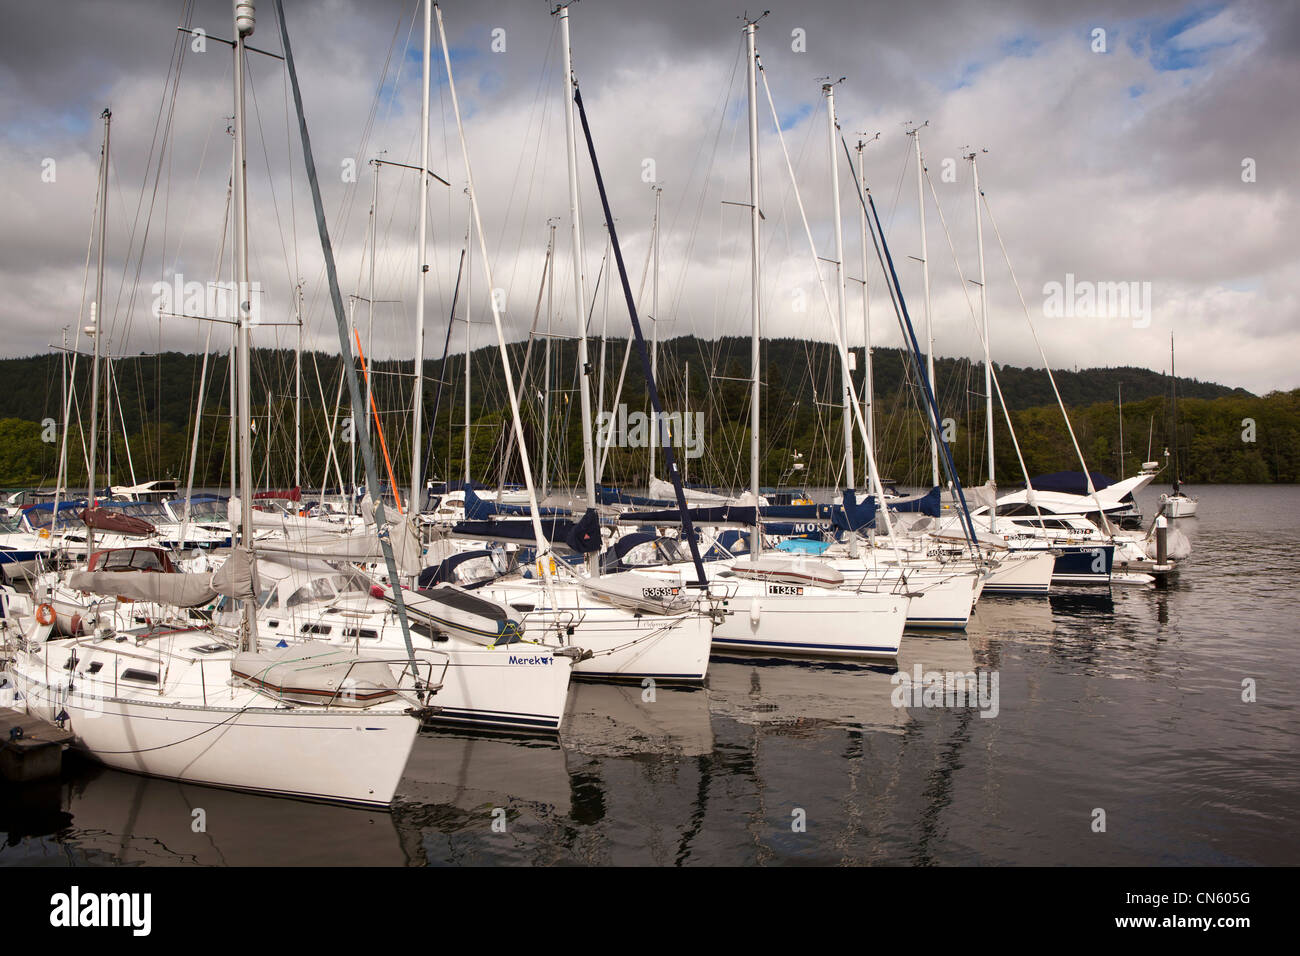 UK, Cumbria, Bowness on Windermere, Marina, sailing yachts moored on the lake Stock Photo